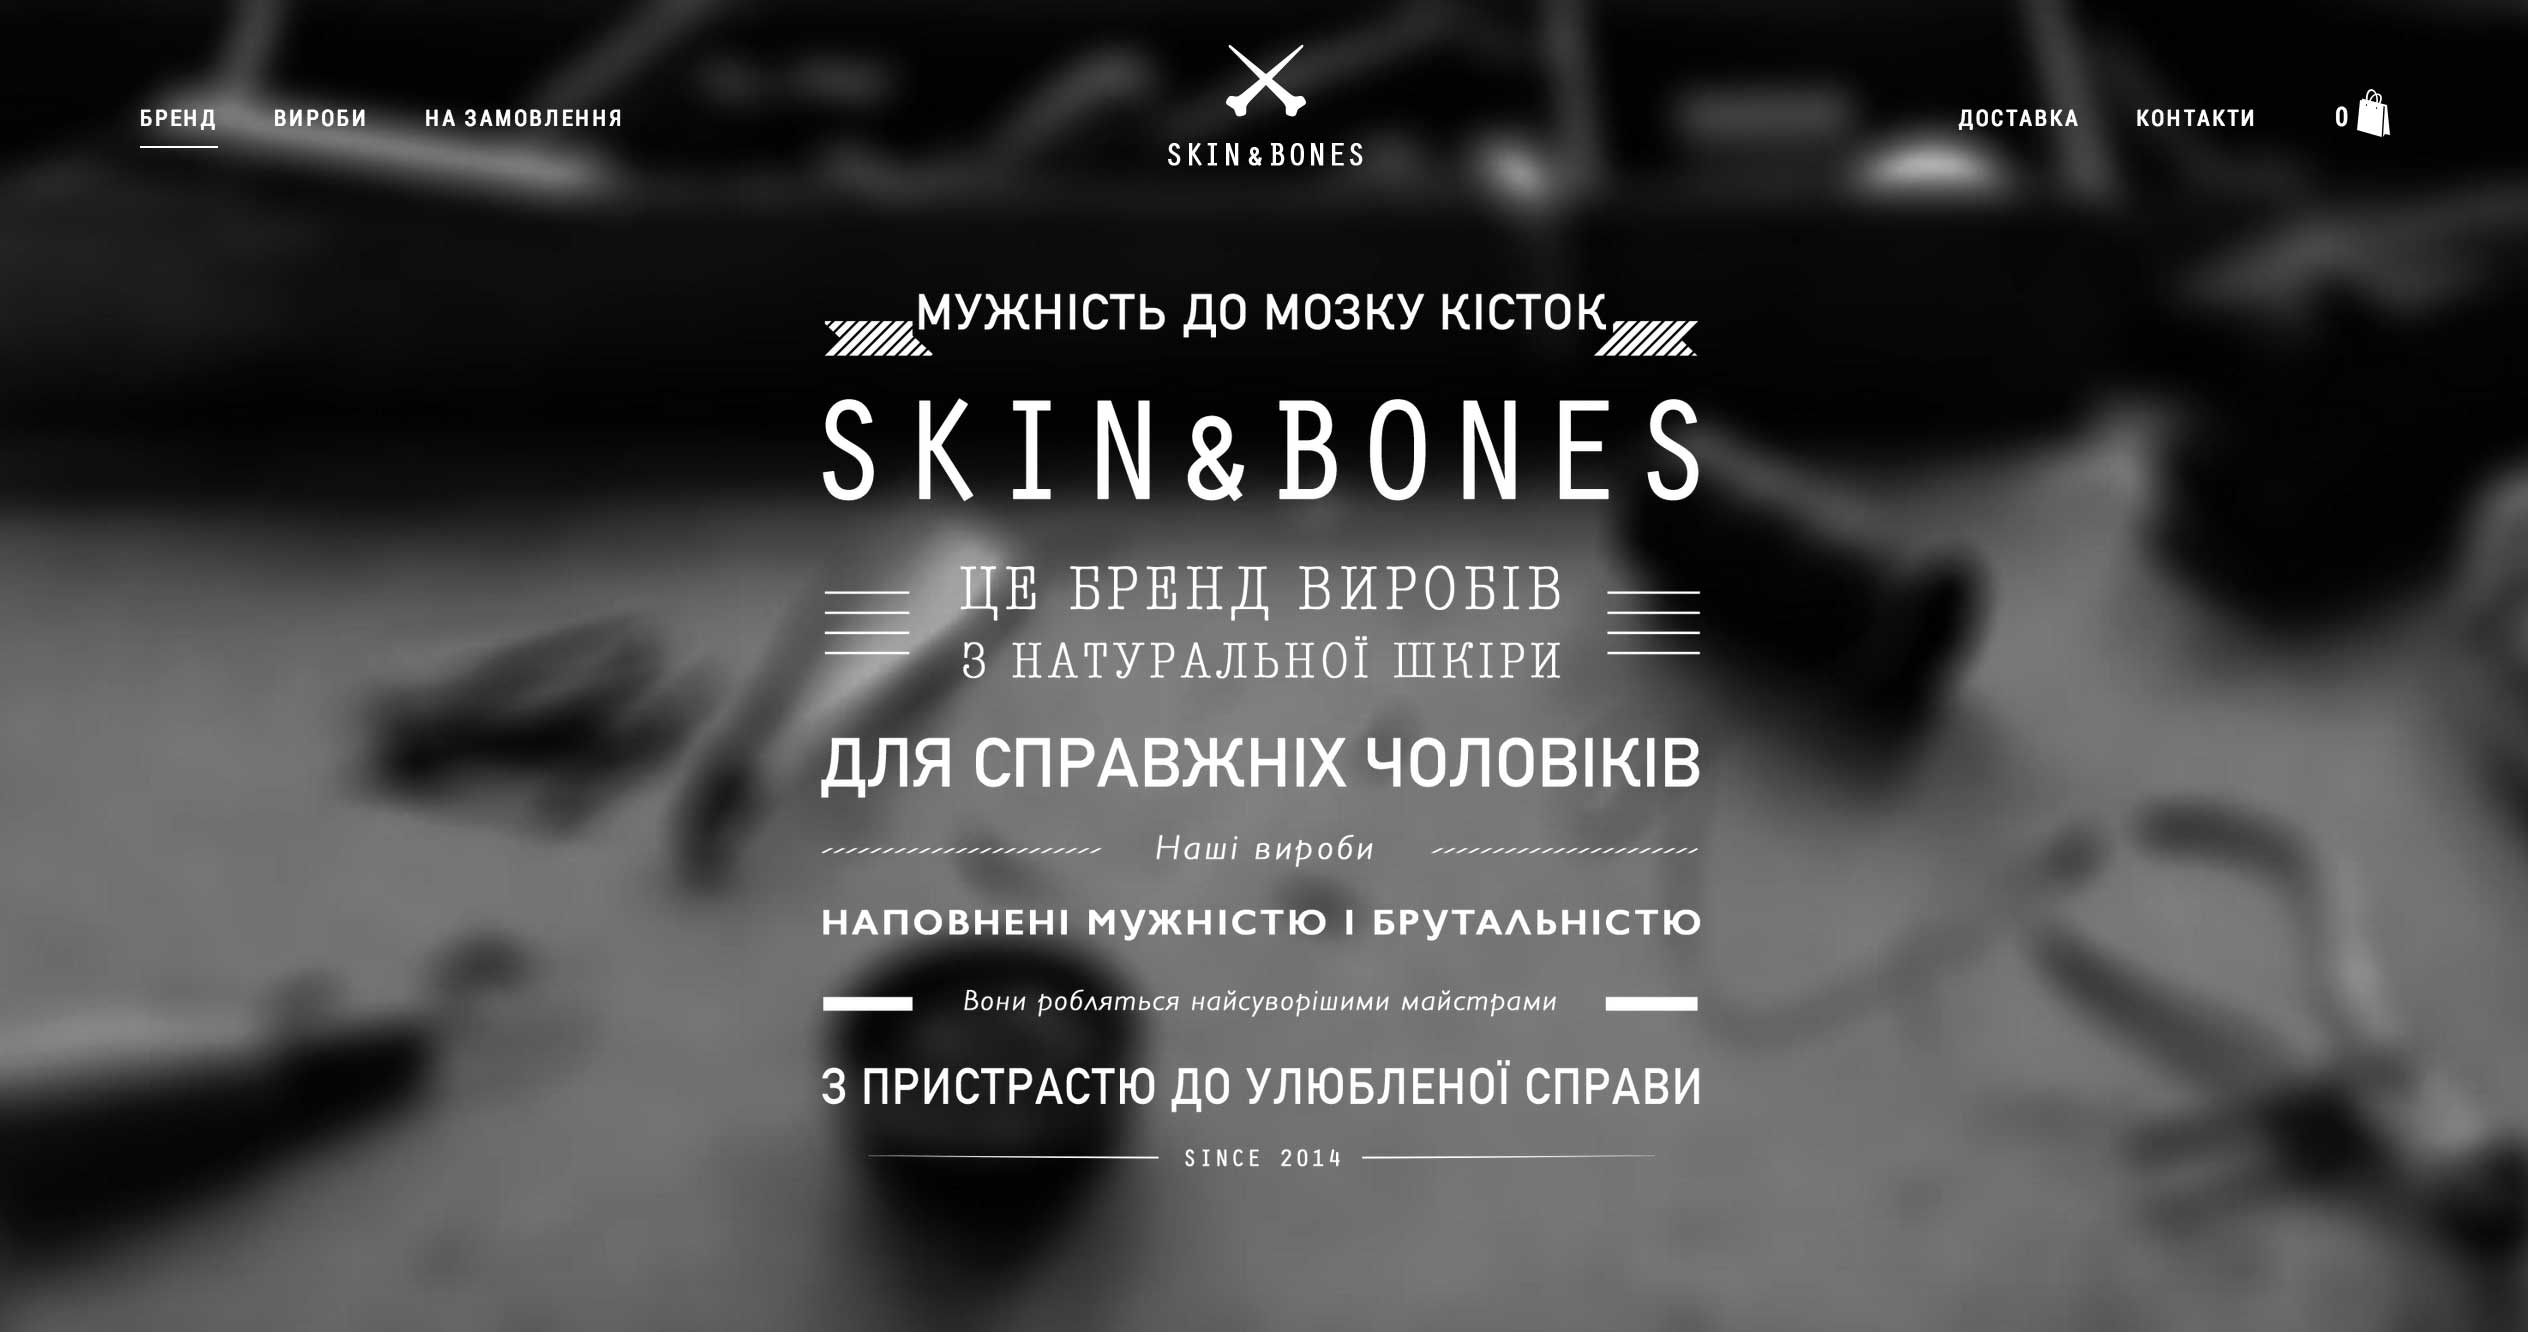 Skin&Bones brand about